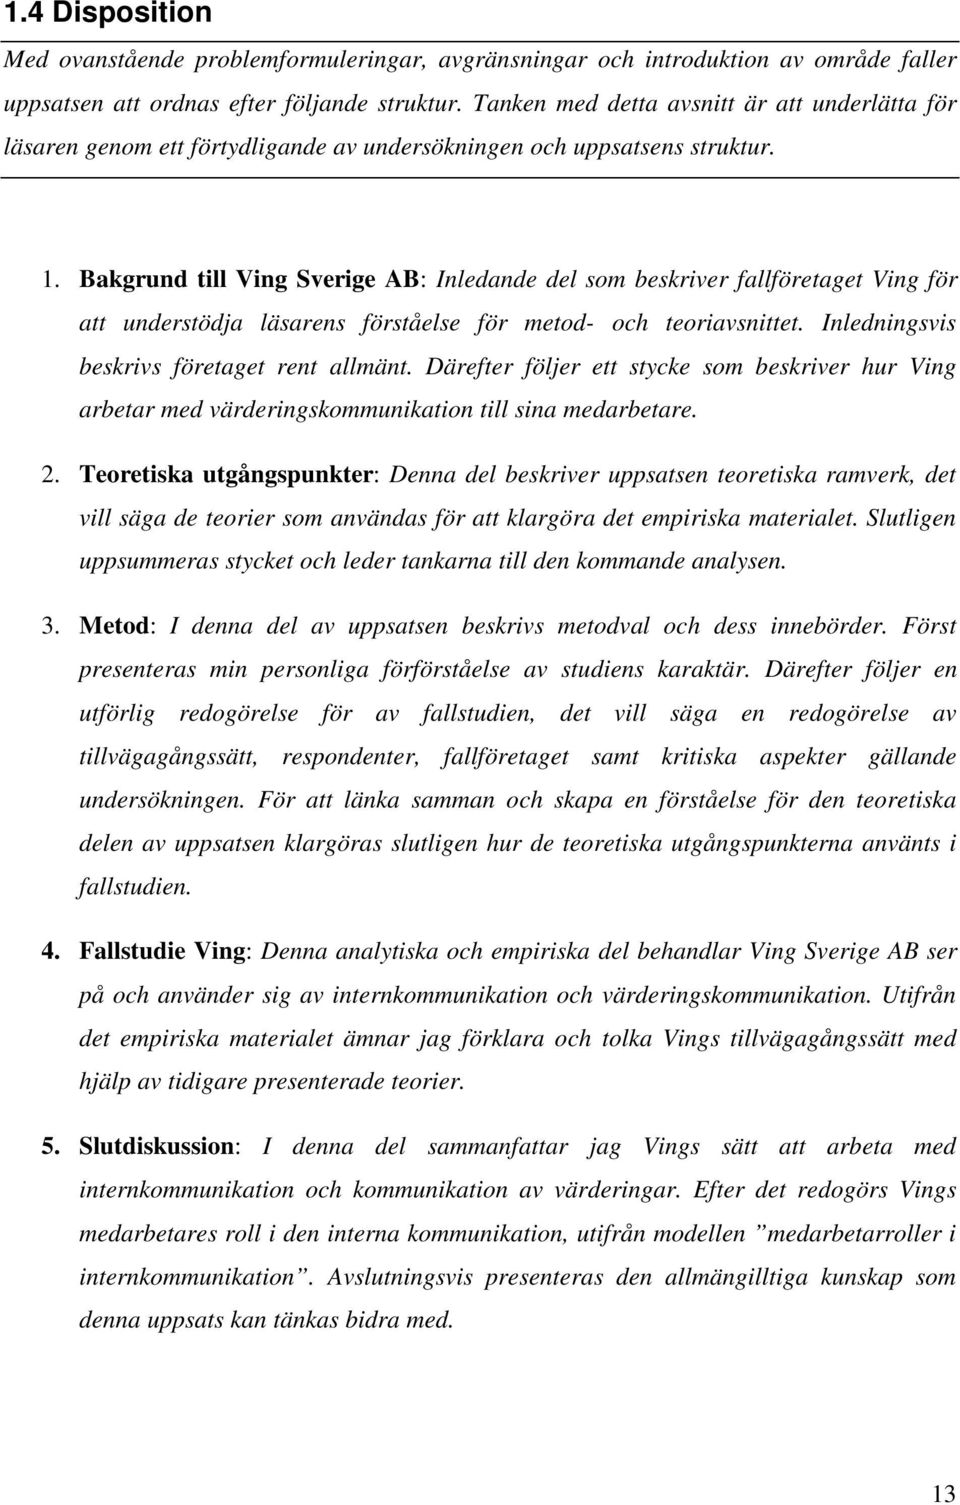 Bakgrund till Ving Sverige AB: Inledande del som beskriver fallföretaget Ving för att understödja läsarens förståelse för metod- och teoriavsnittet. Inledningsvis beskrivs företaget rent allmänt.